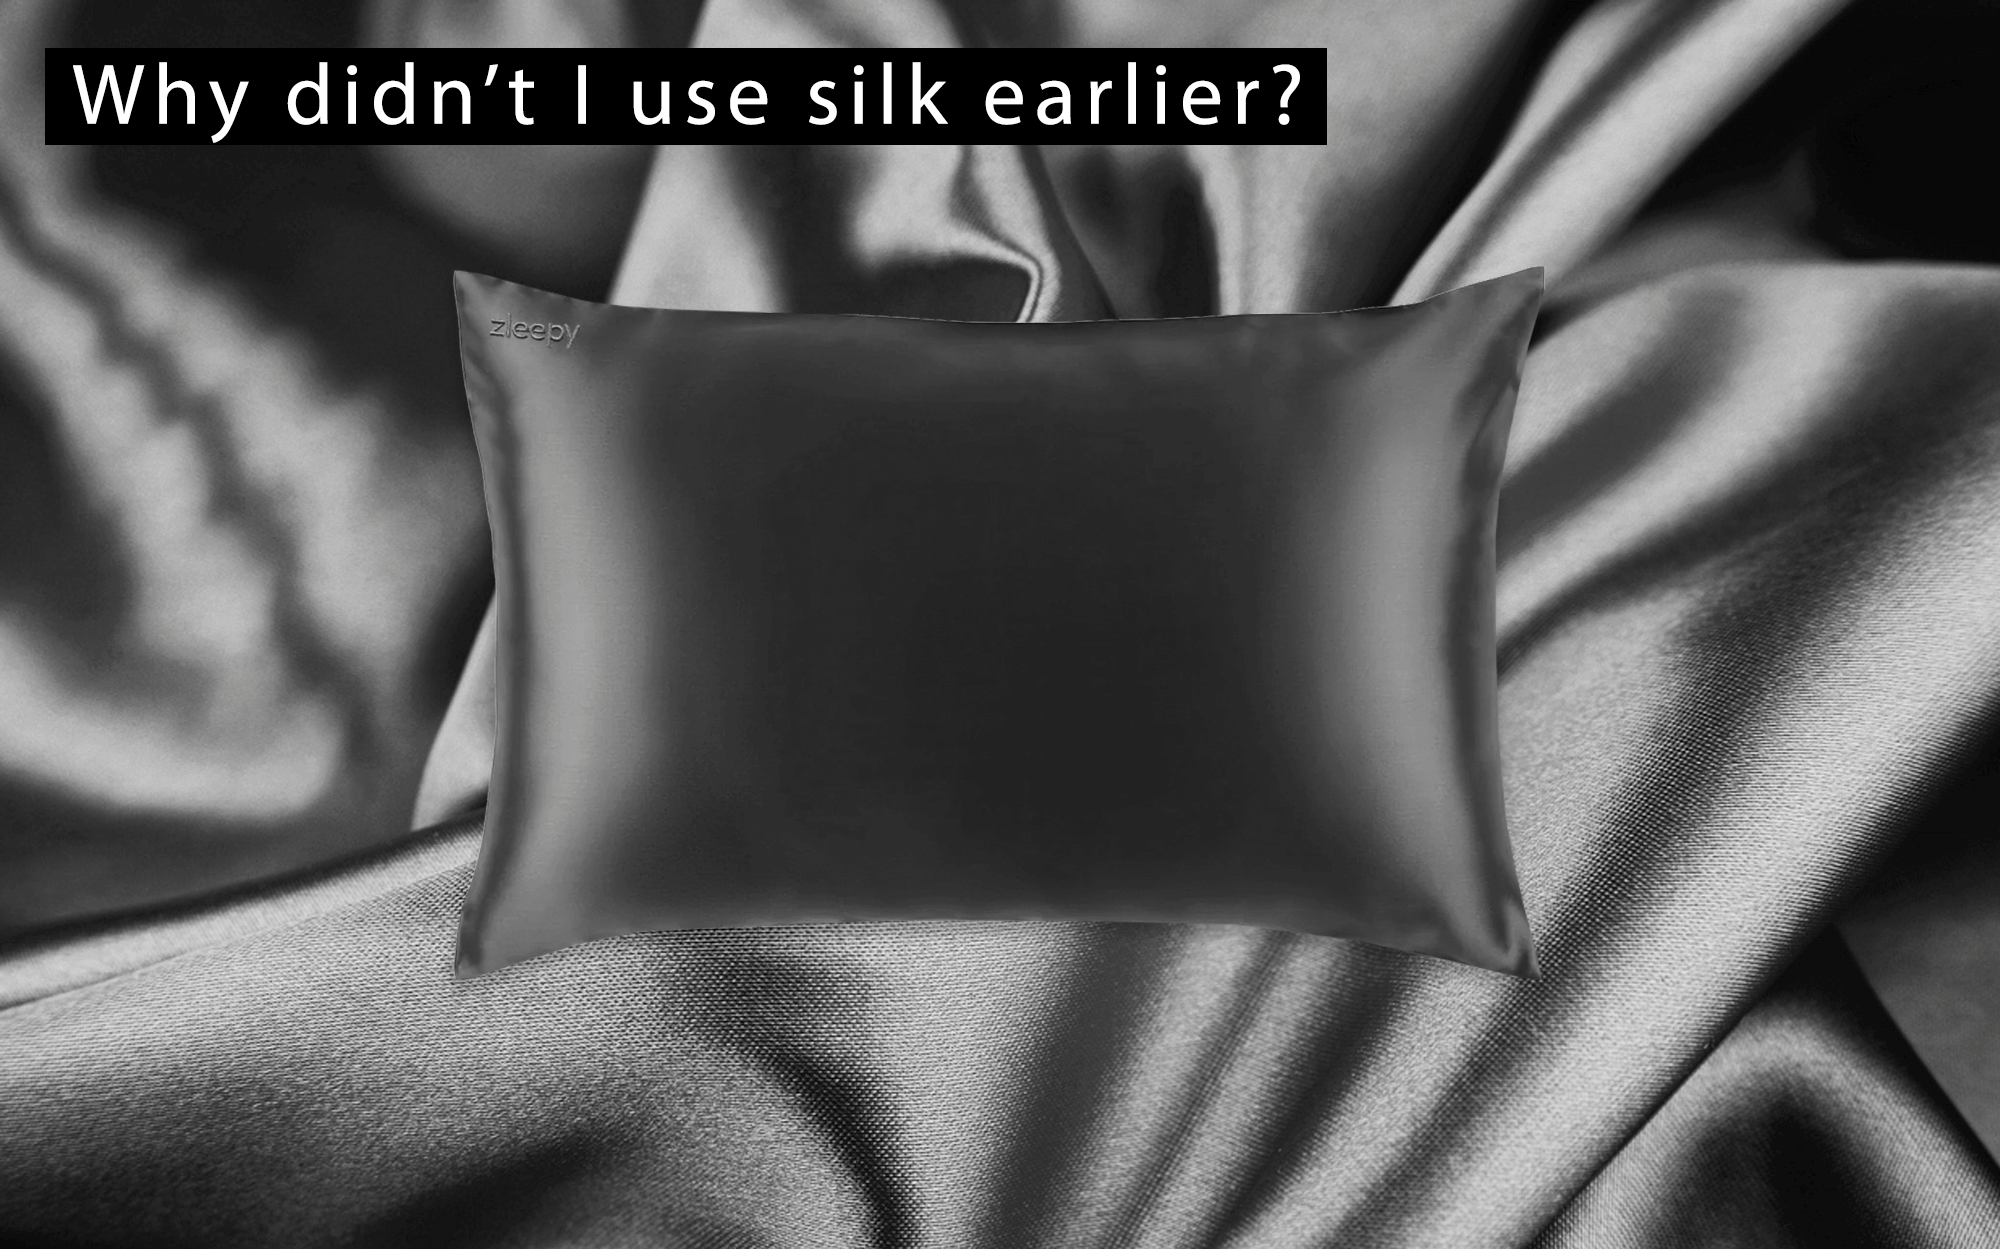 why-didn't-I-use-my-grey-silk-pillowcase-earlier